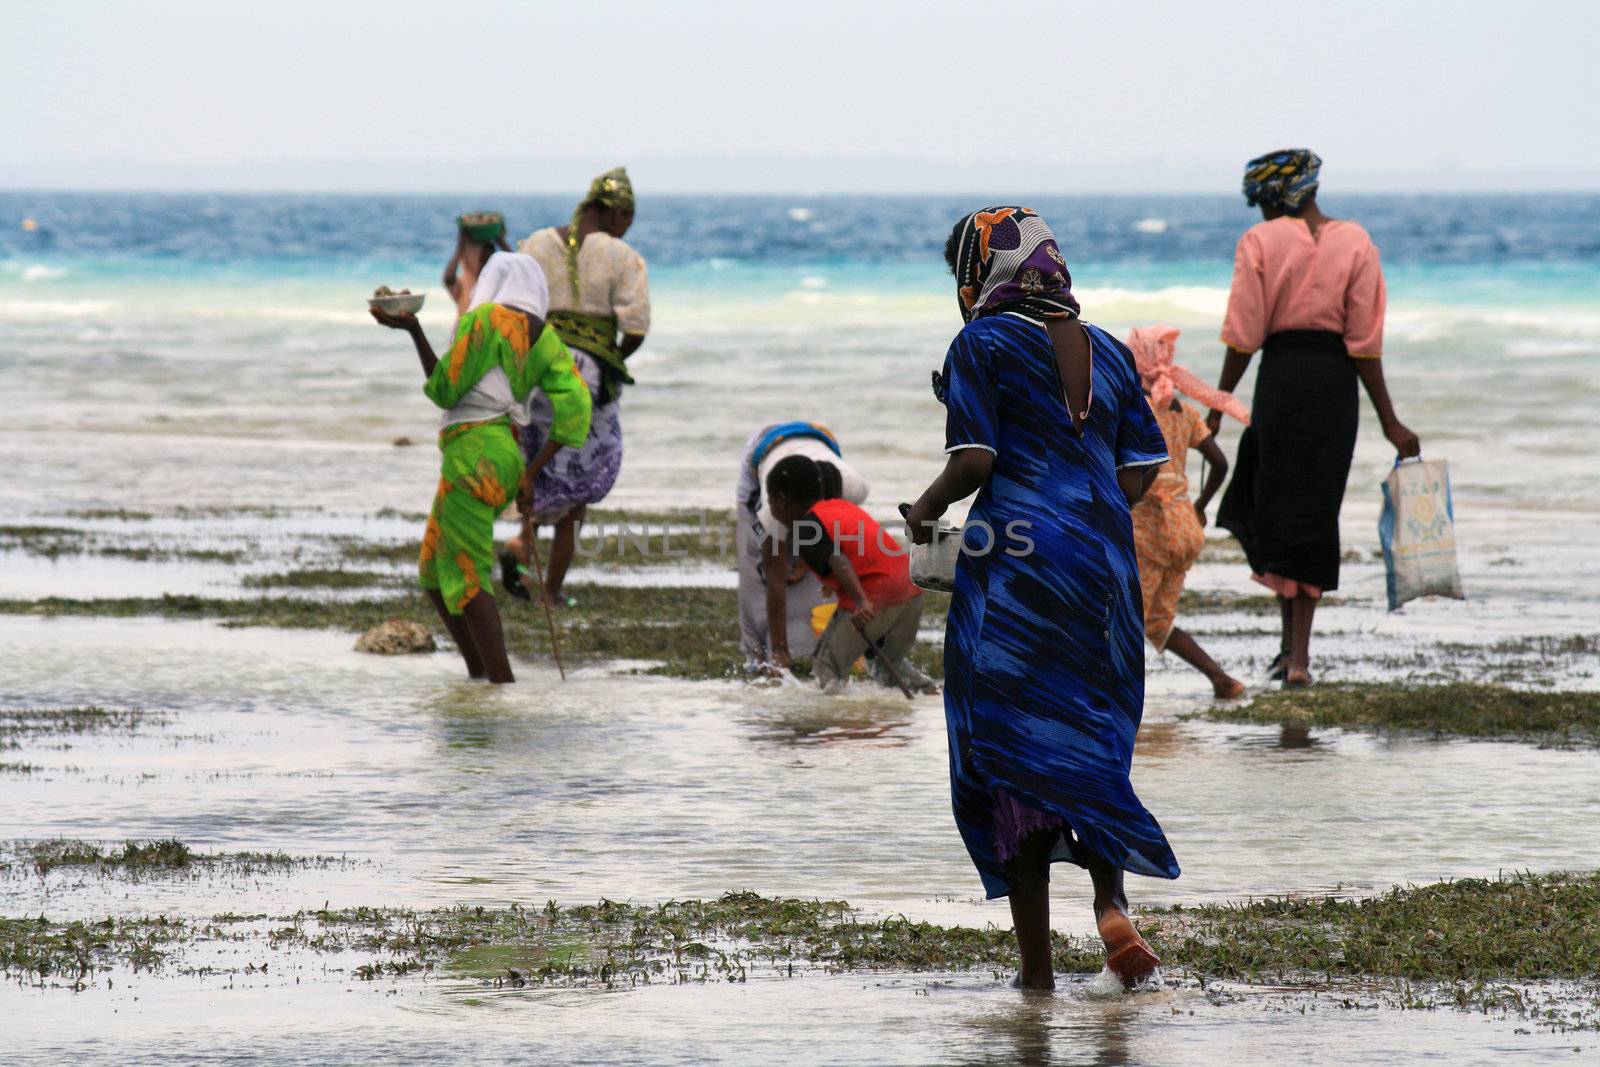 Women and children in Zanzibar by landon